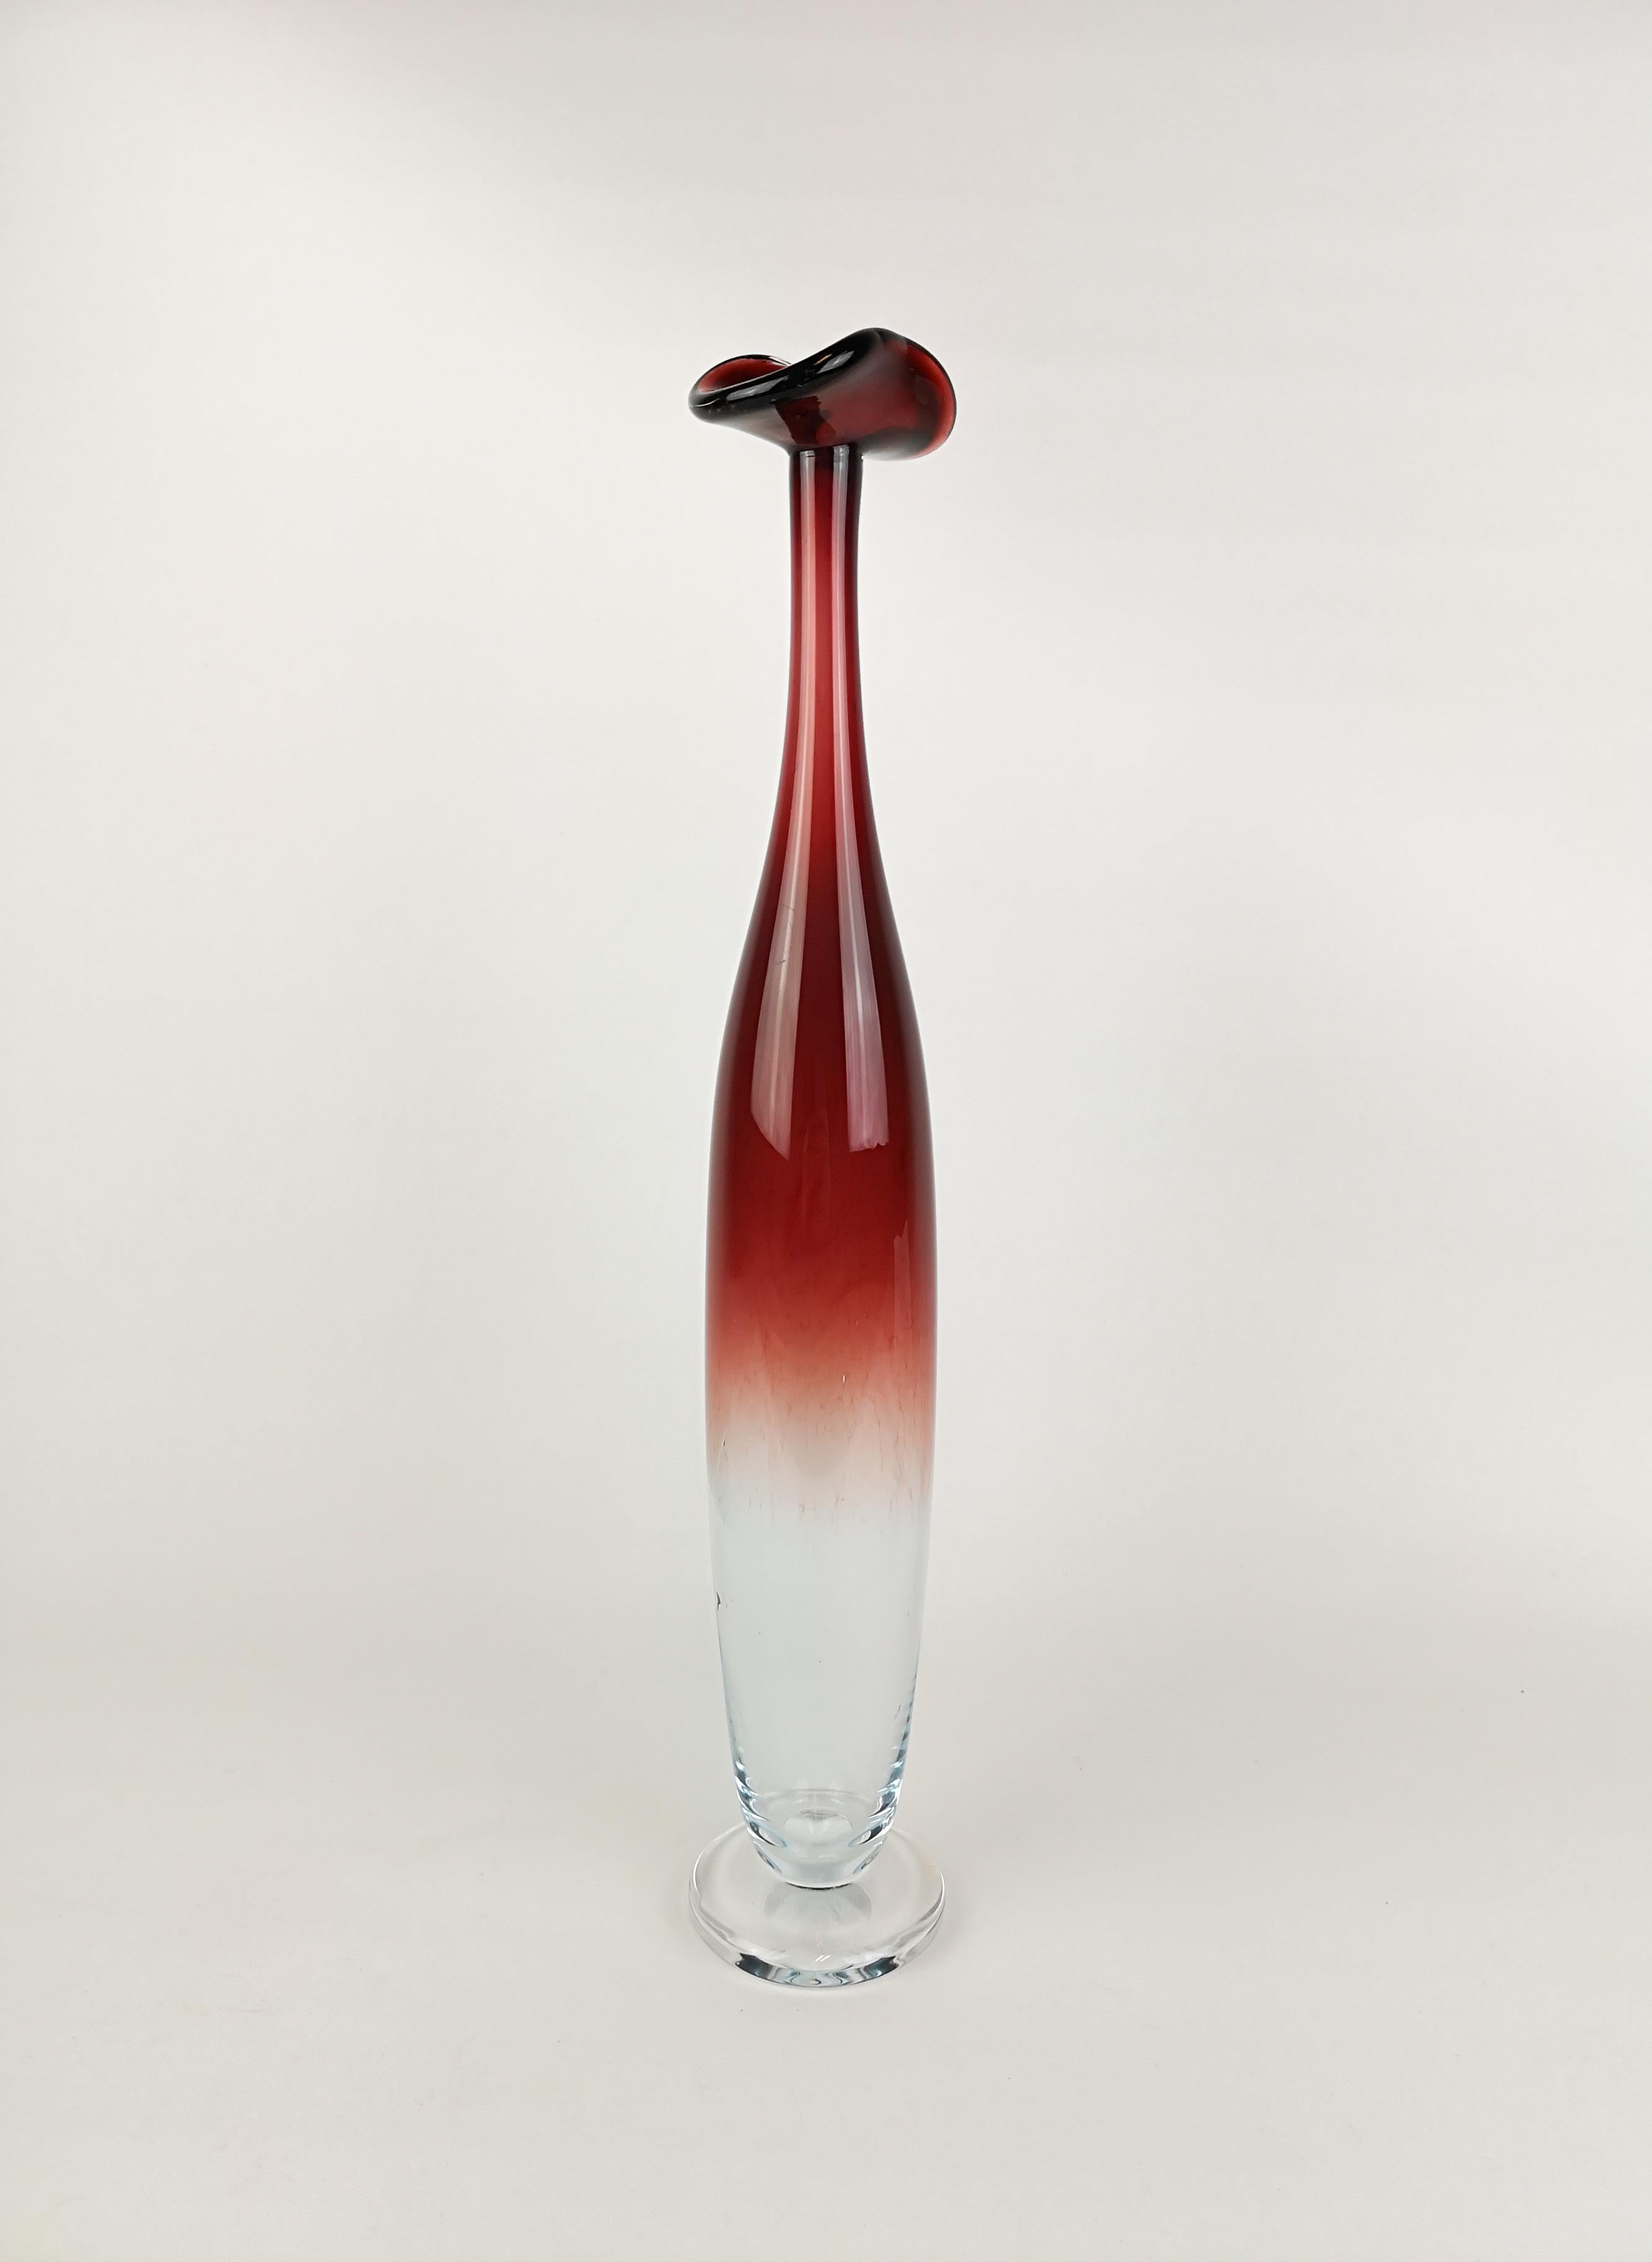 Orrefors Expo hohe Tulpenvase, entworfen von Nils Landberg. 
Wunderschönes Glas mit außergewöhnlicher roter Farbe, die mit dem klaren Glas kollaboriert. 
Eine schöne Spitze auf dieser Vase. Es ist in sehr gutem Zustand. 

Maße: 38 cm. Signiert